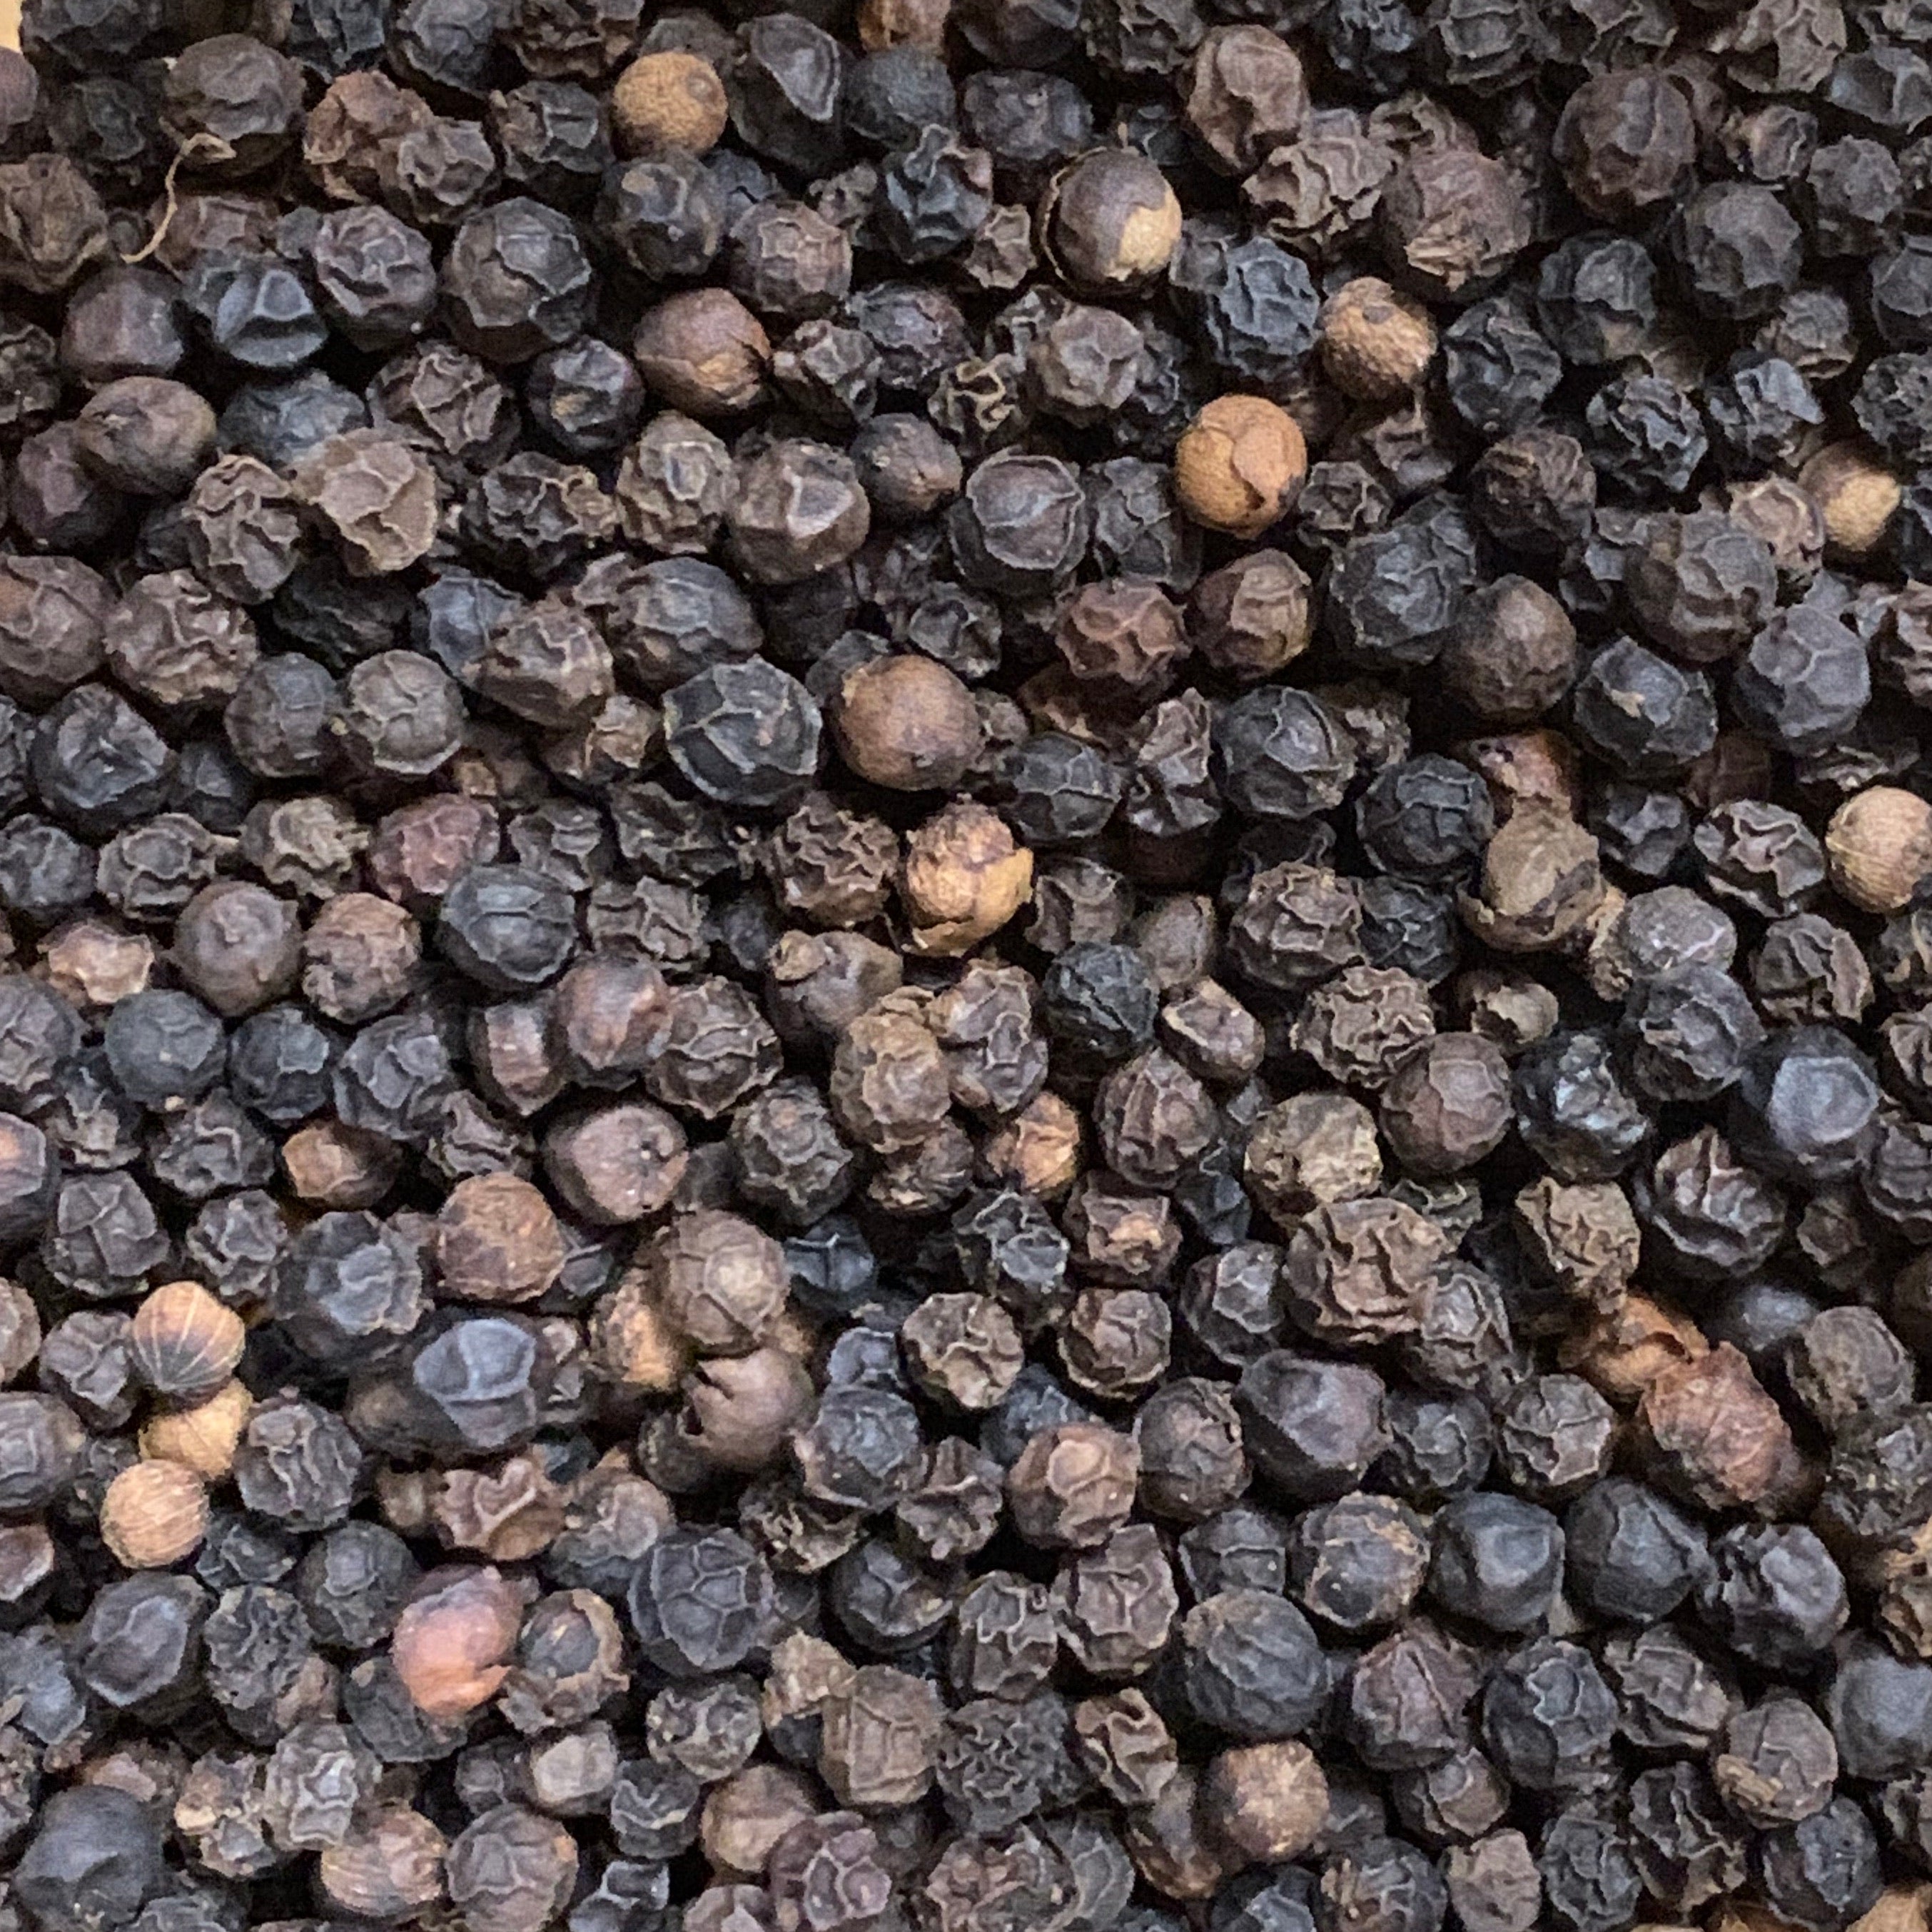 Black Peppercorn (Piper nigra)